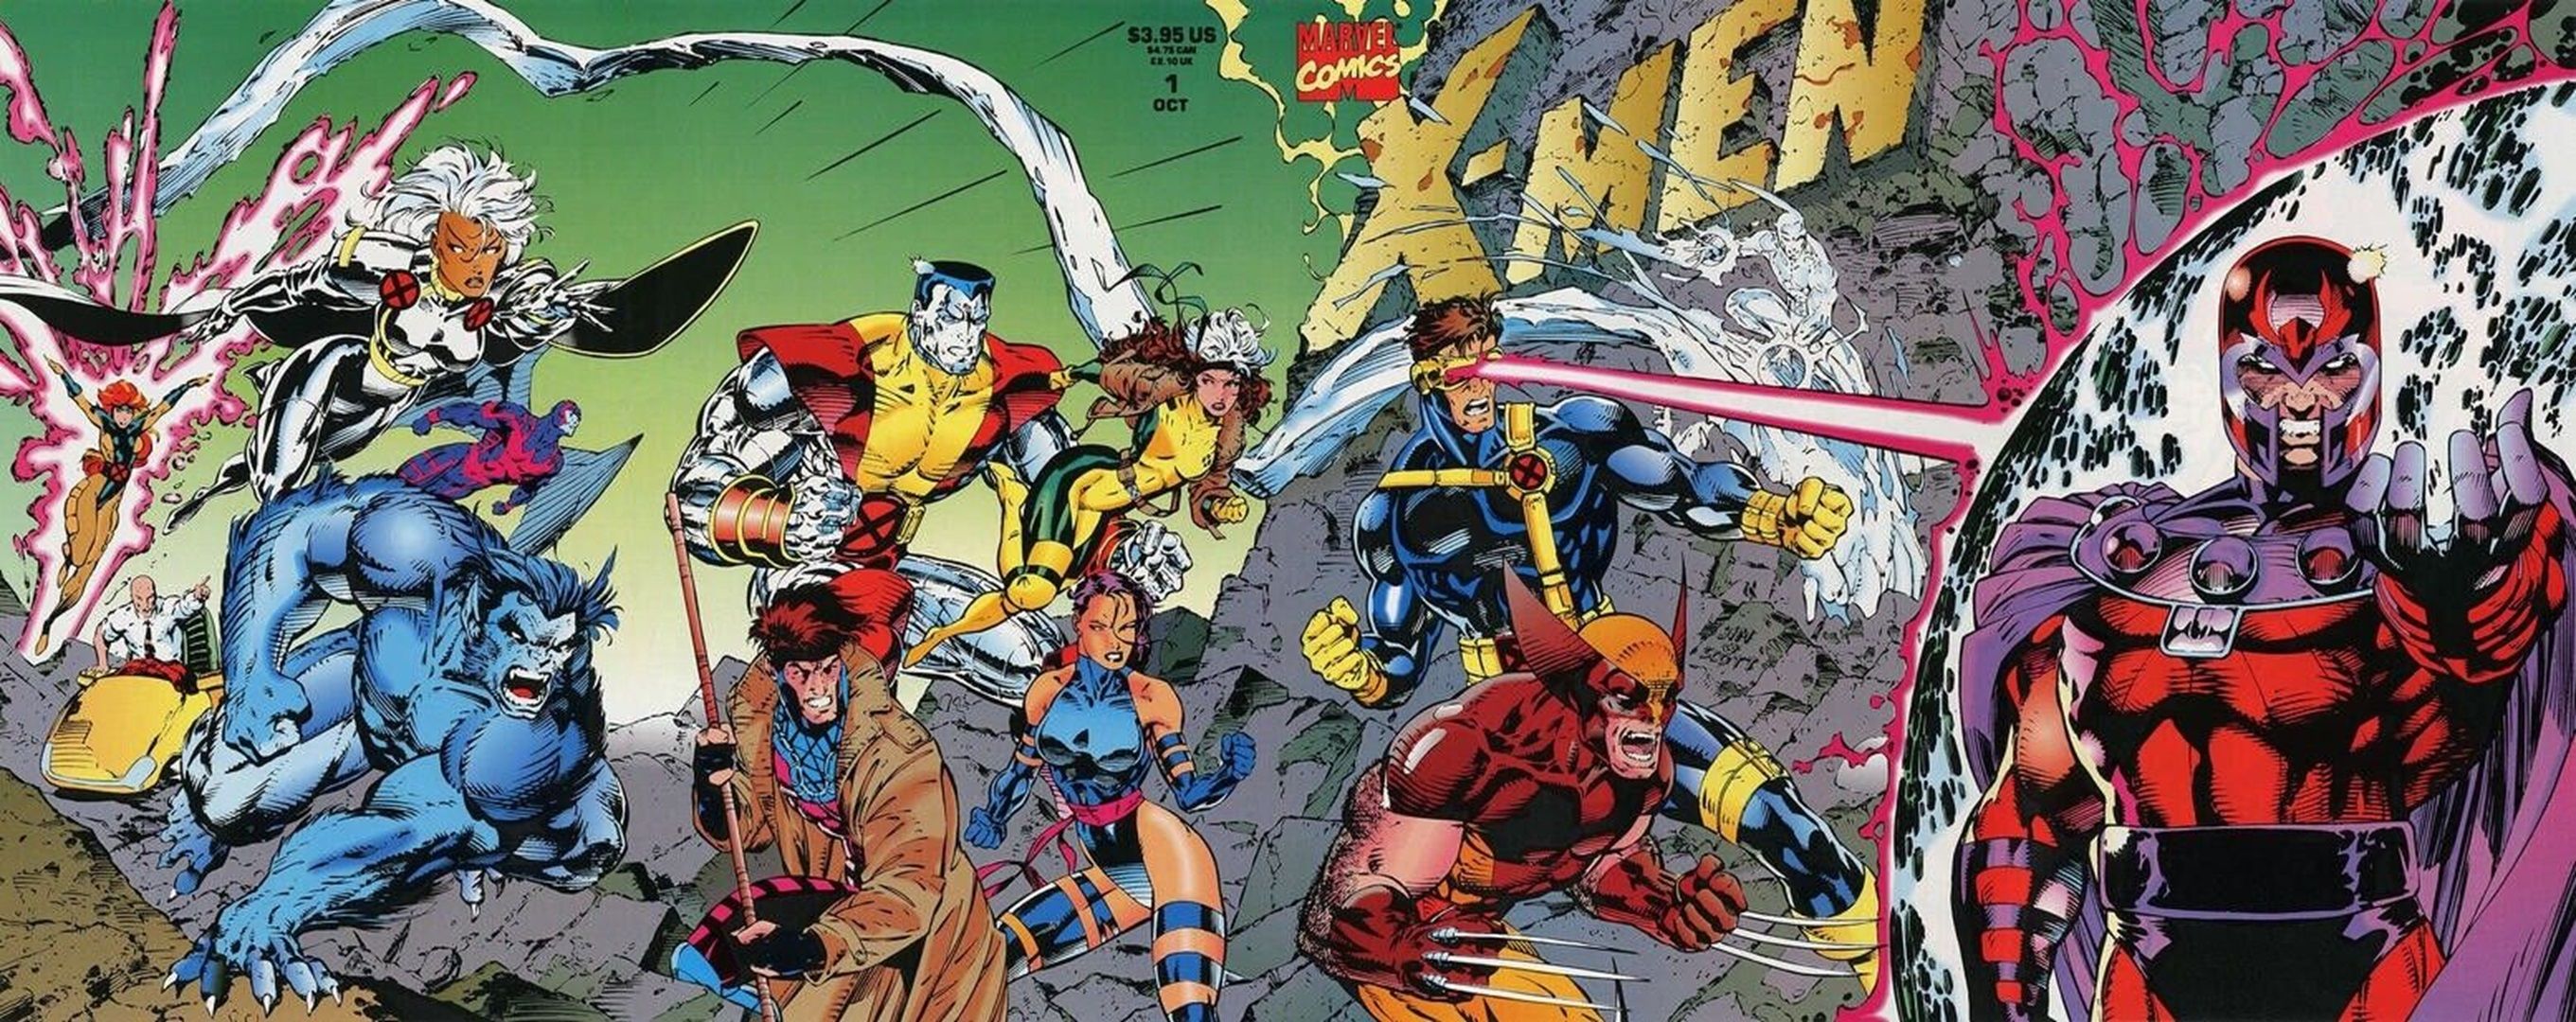 Portada desplegable de Jim Lee para X-Men #1